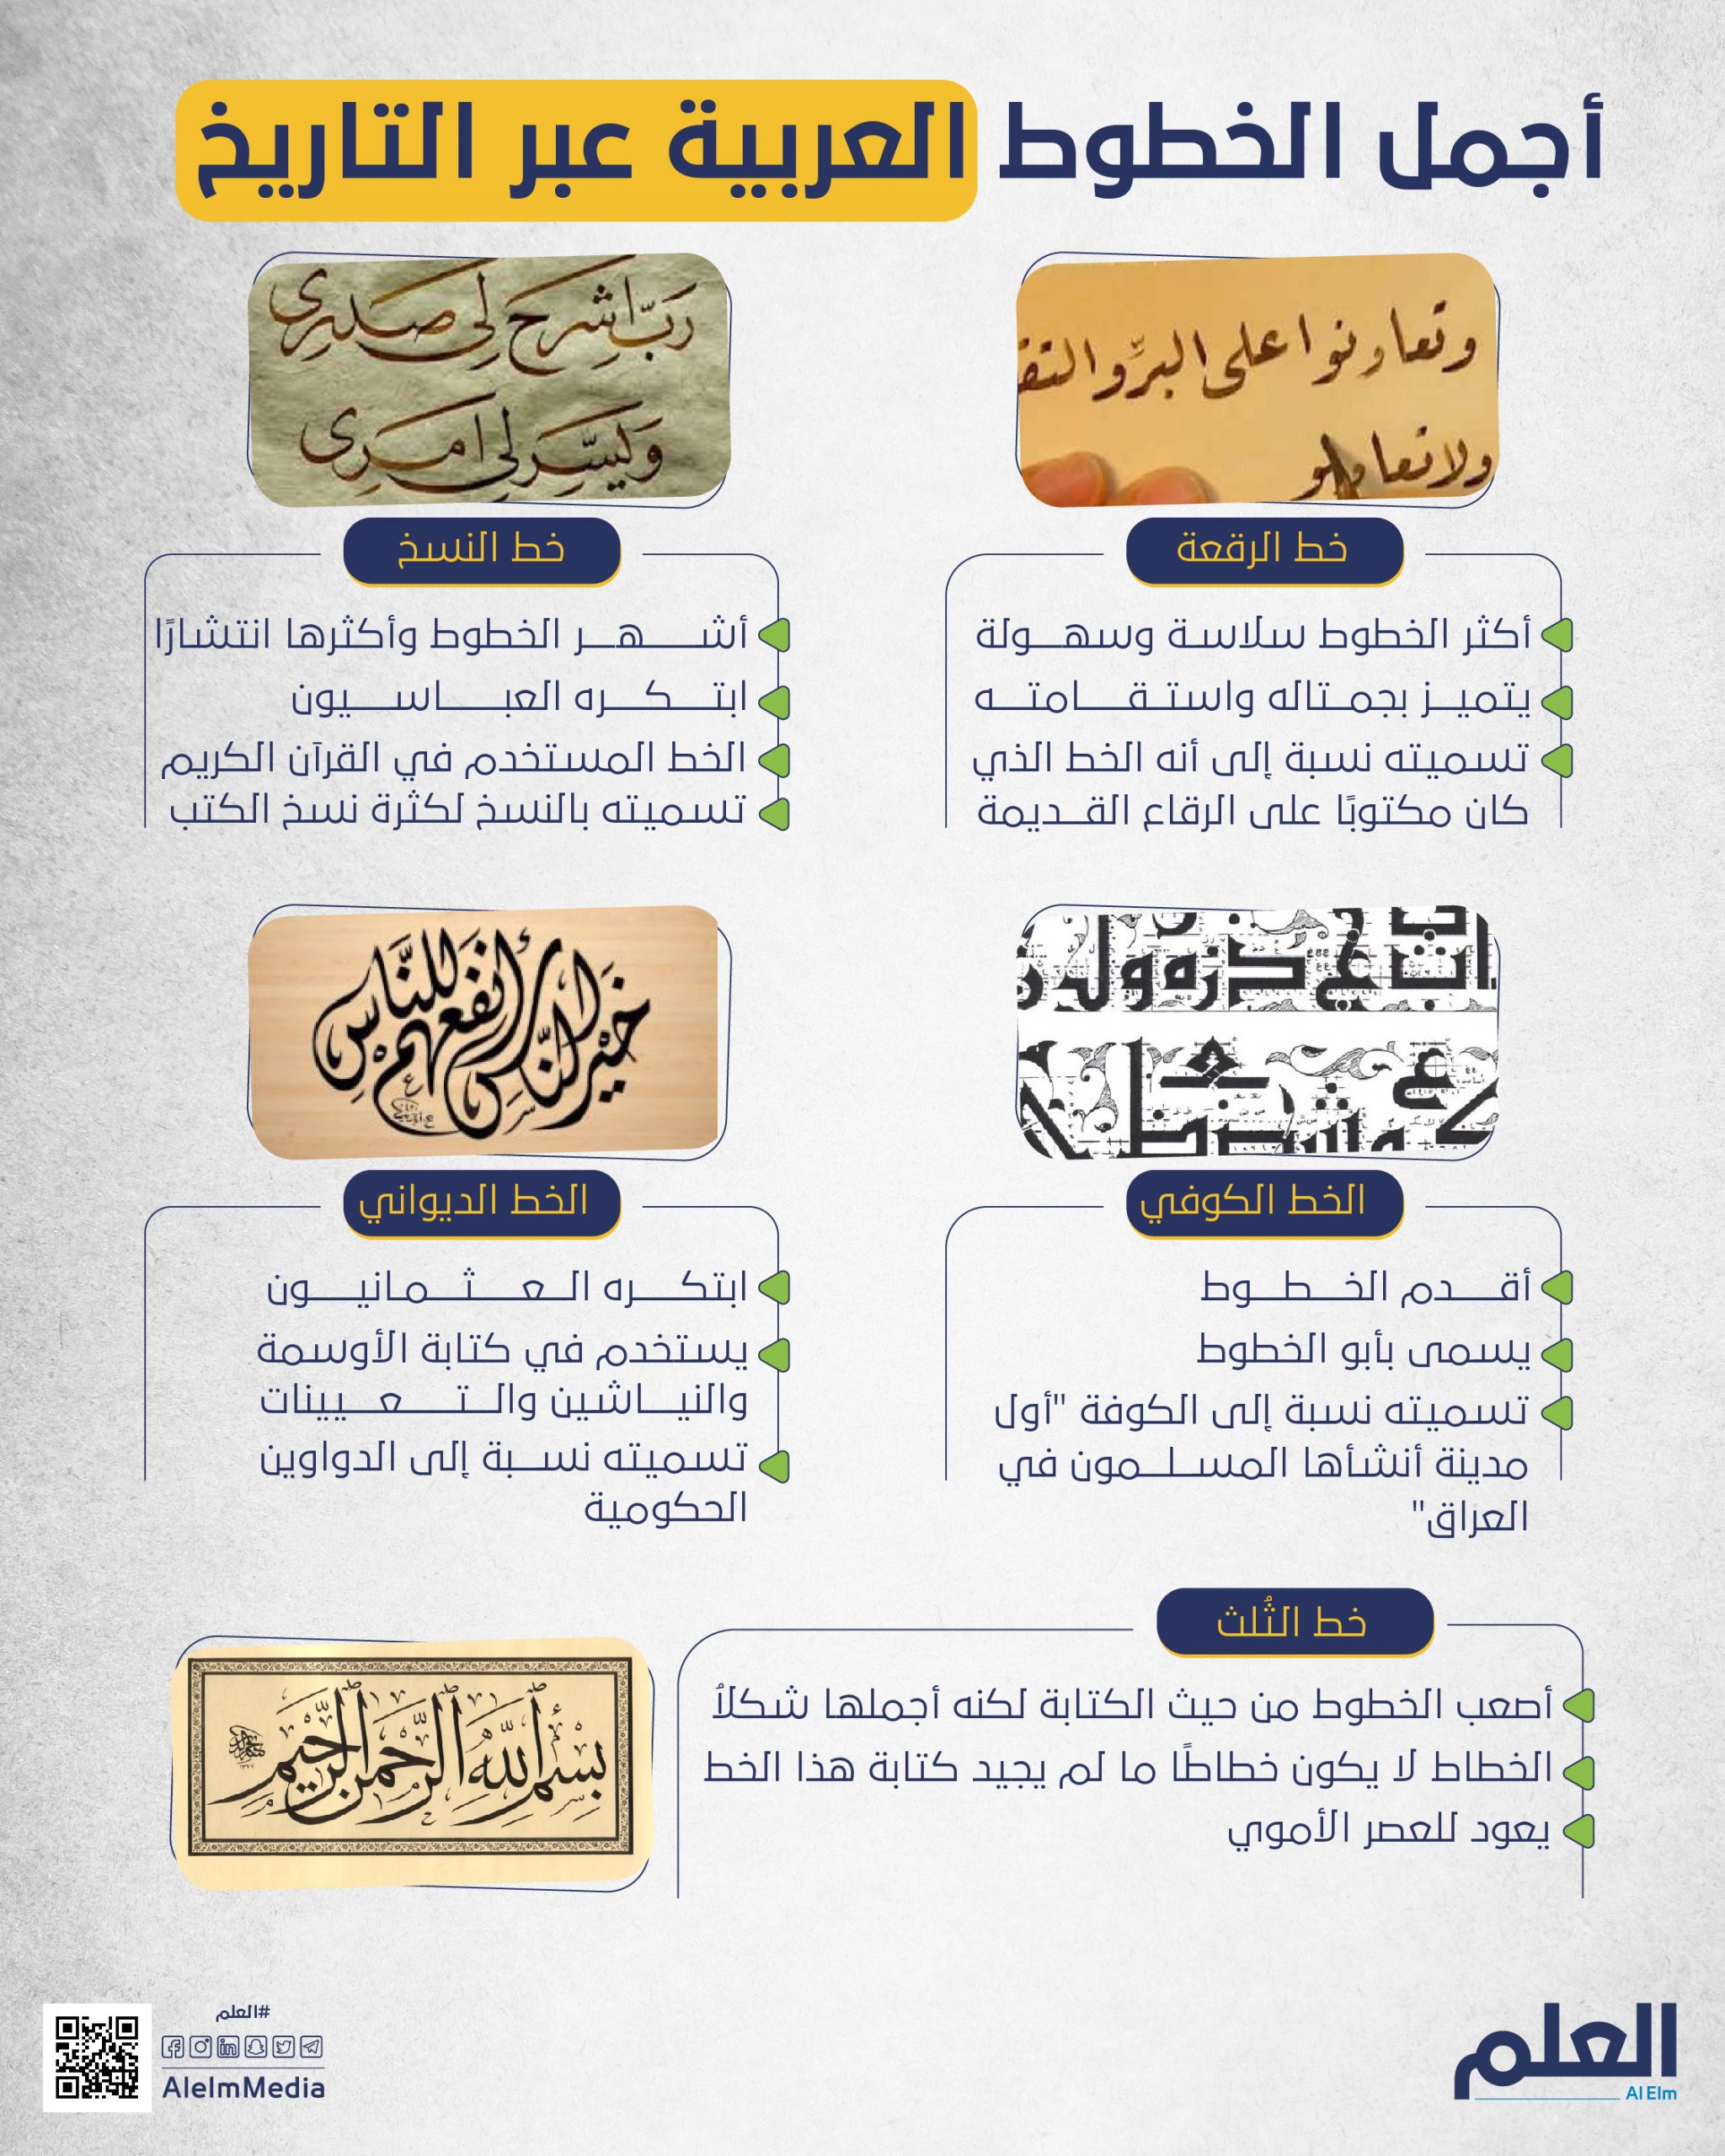 أجمل الخطوط العربية عبر التاريخ